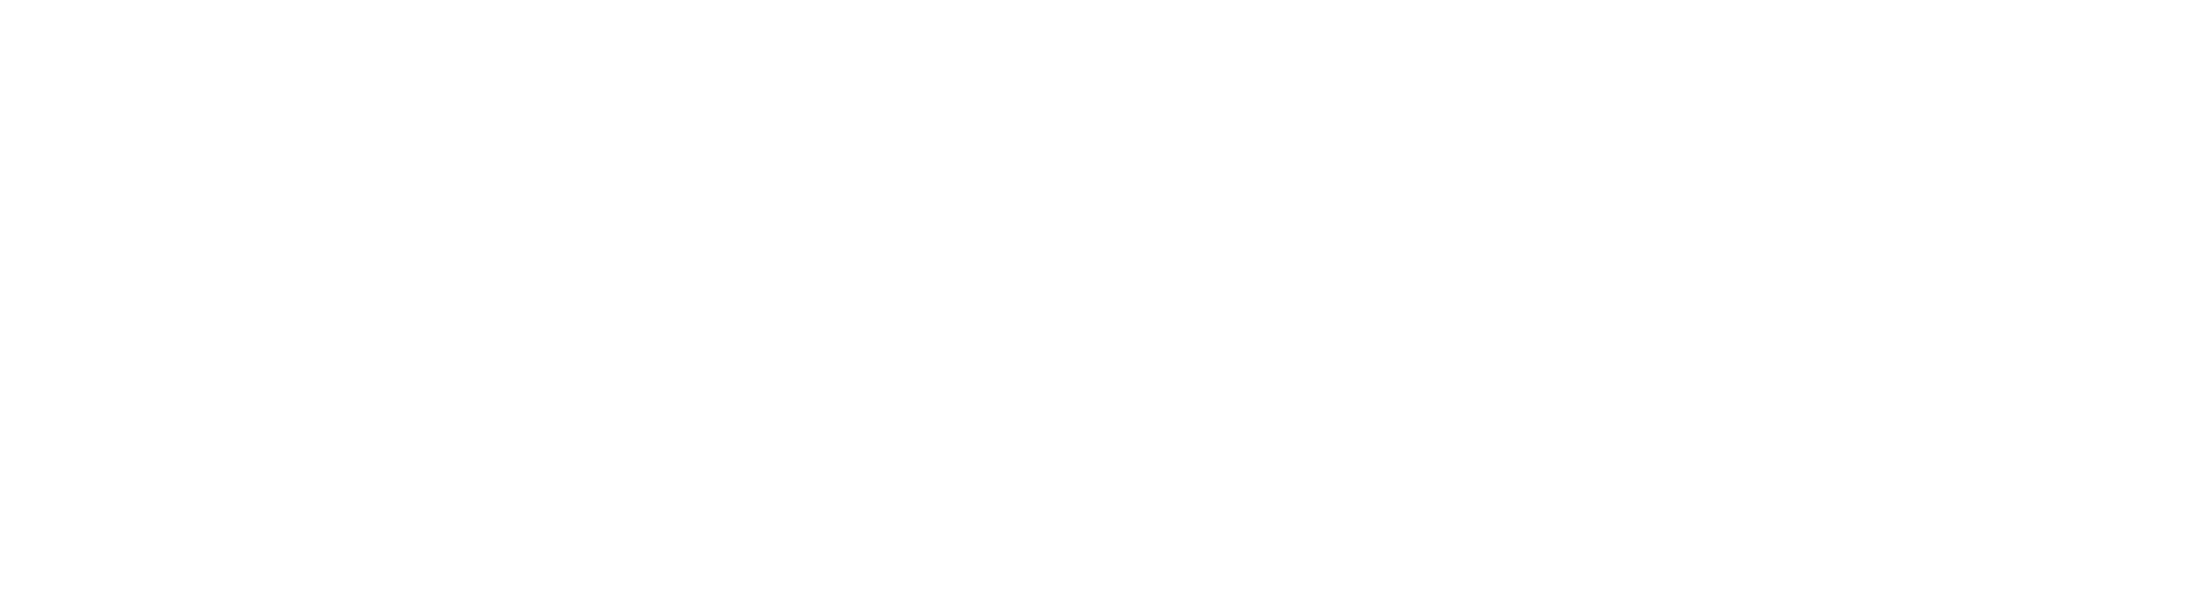 wasshop logo - wb